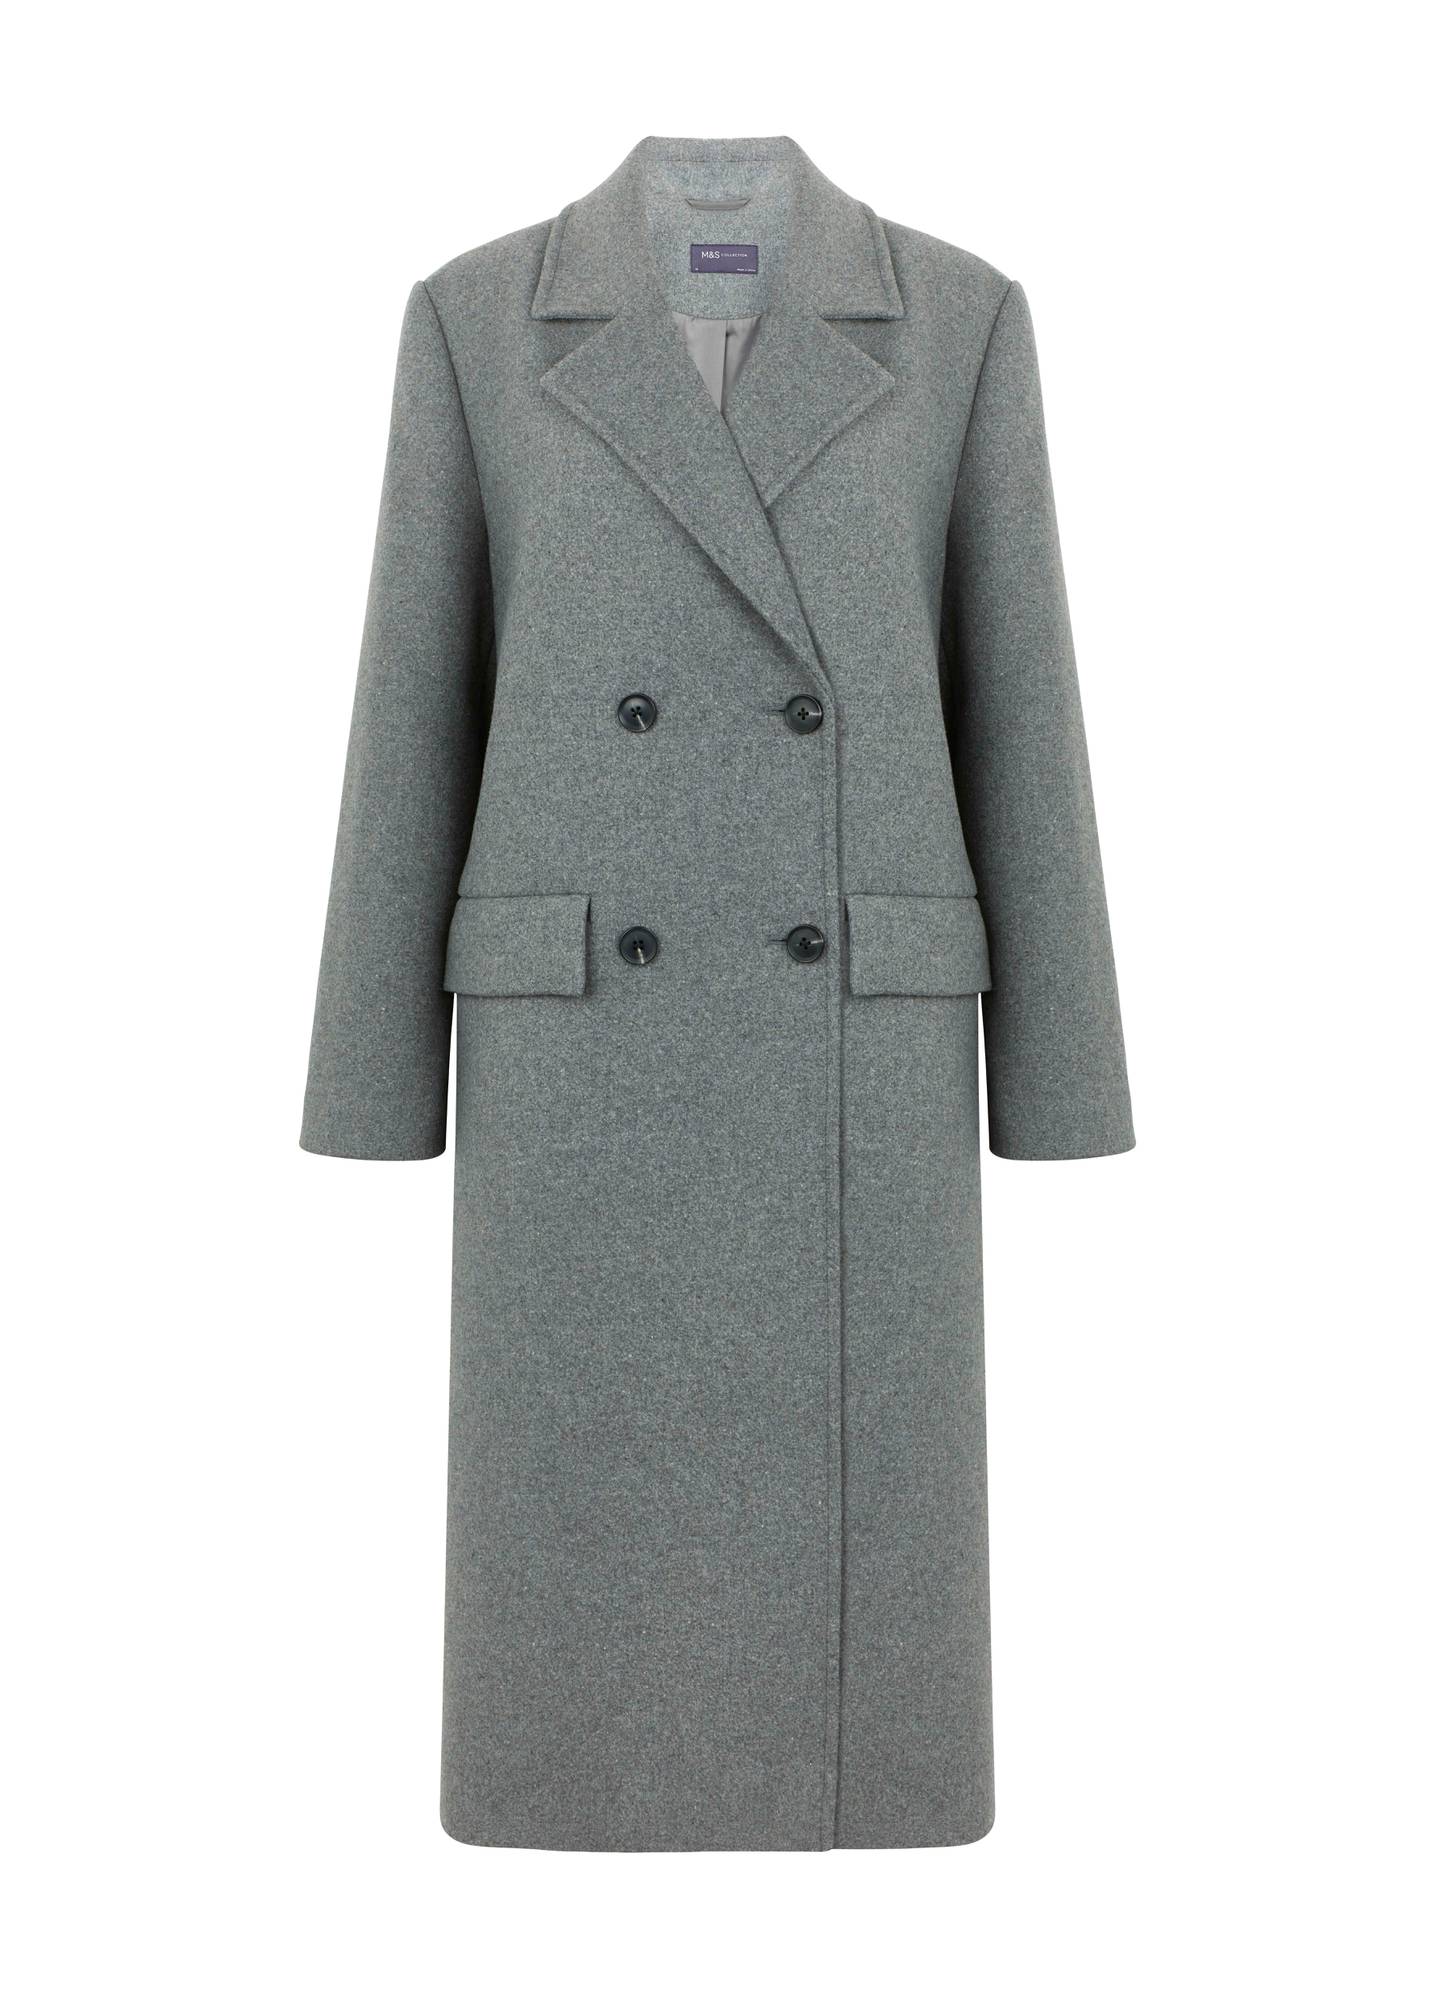 Grey overcoat, €125, M&S